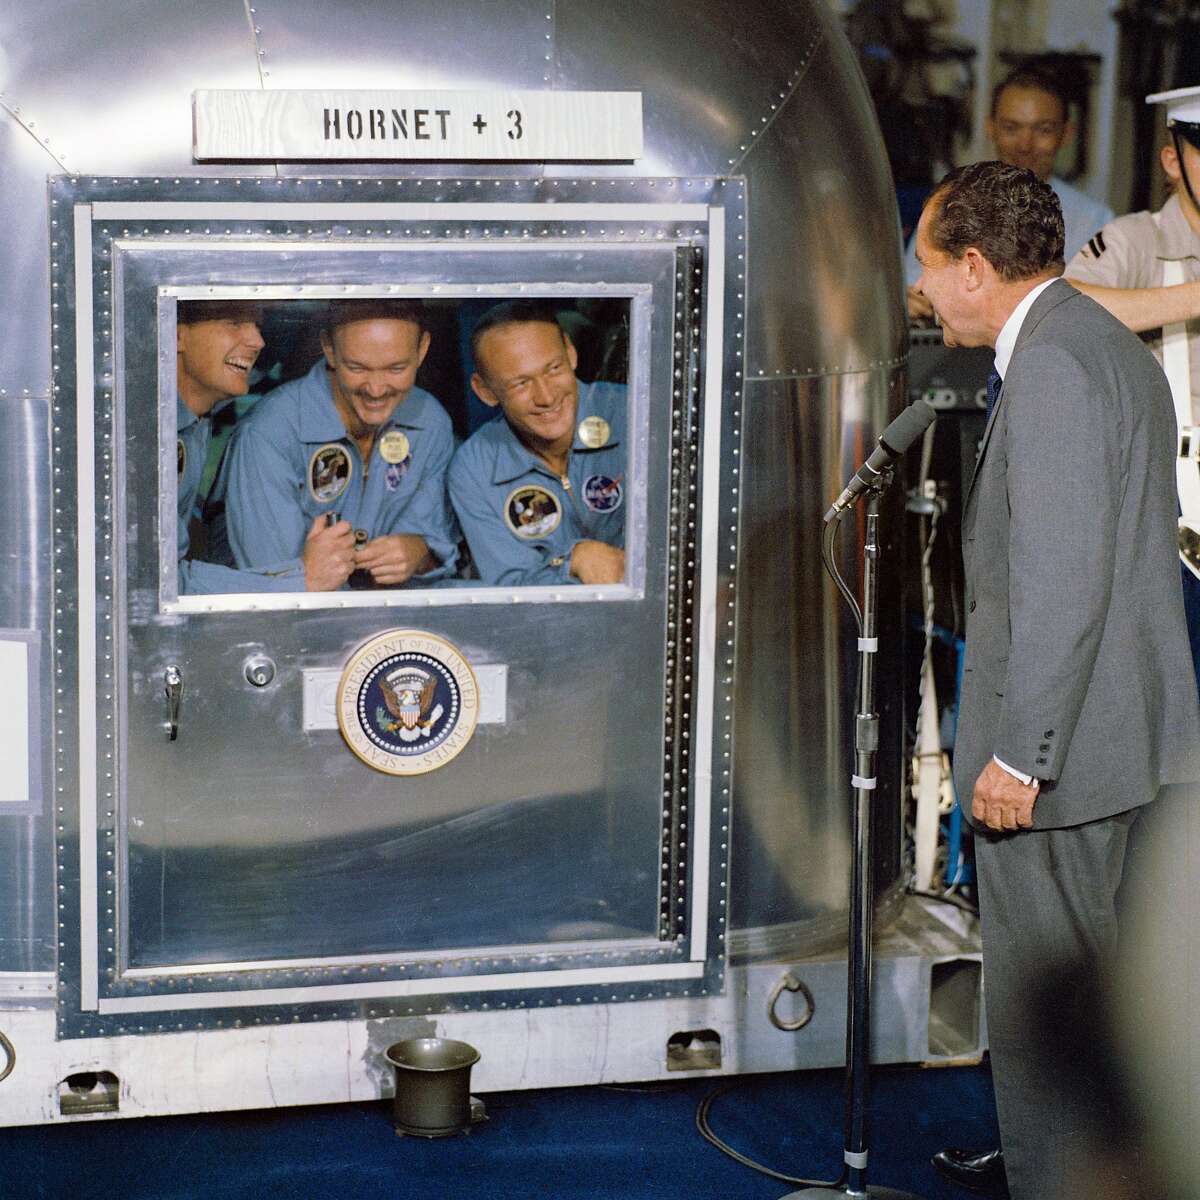 (1969年7月24日)——美国总统理查德·尼克松(Richard M. Nixon)在太平洋中部回收区欢迎阿波罗11号宇航员乘坐“大黄蜂”号飞船，这是历史性的阿波罗11号登月任务的主要回收船。已经被限制在流动隔离设施(MQF)的是(从左至右)指挥官尼尔·a·阿姆斯特朗;迈克尔·柯林斯，指令舱飞行员;以及登月舱飞行员小埃德温·e·奥尔德林。阿波罗11号于1969年7月24日上午11点49分(CDT)溅落在夏威夷西南约812海里处，距离美国大黄蜂号只有12海里。这三名宇航员将留在MQF，直到他们到达载人航天中心(MSC)月球接收实验室(LRL)。当宇航员阿姆斯特朗和奥尔德林在登月舱降落时，“鹰”号探索月球宁静海地区时，宇航员柯林斯留在了指挥与服务舱(CSM)在月球轨道上的哥伦比亚号。图片来源:NASA